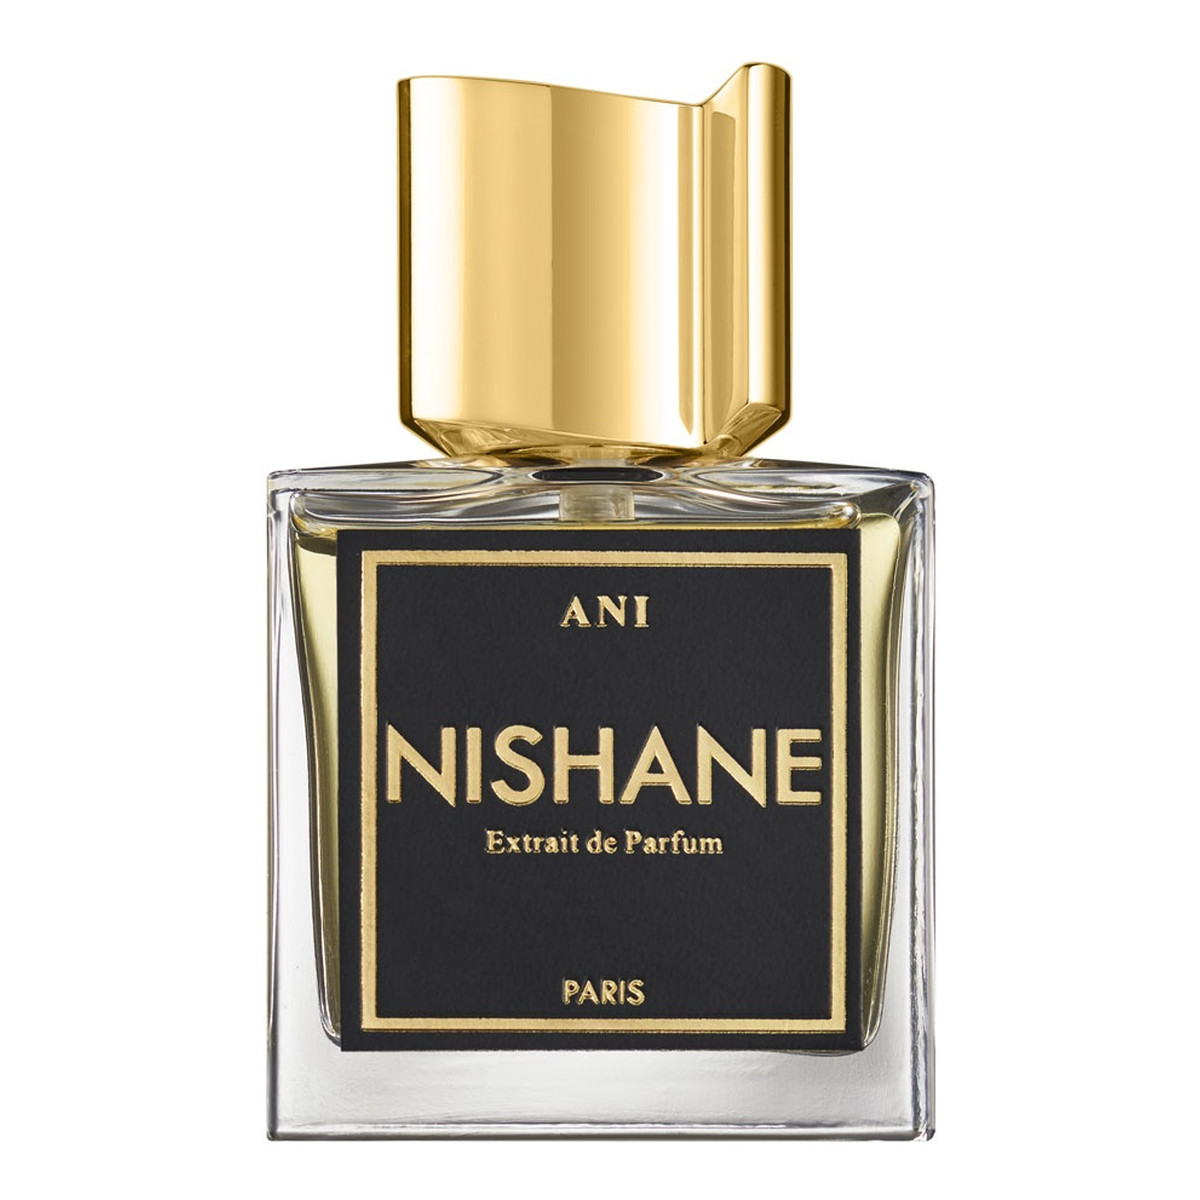 Nishane Ani ekstrakt perfum spray 100ml